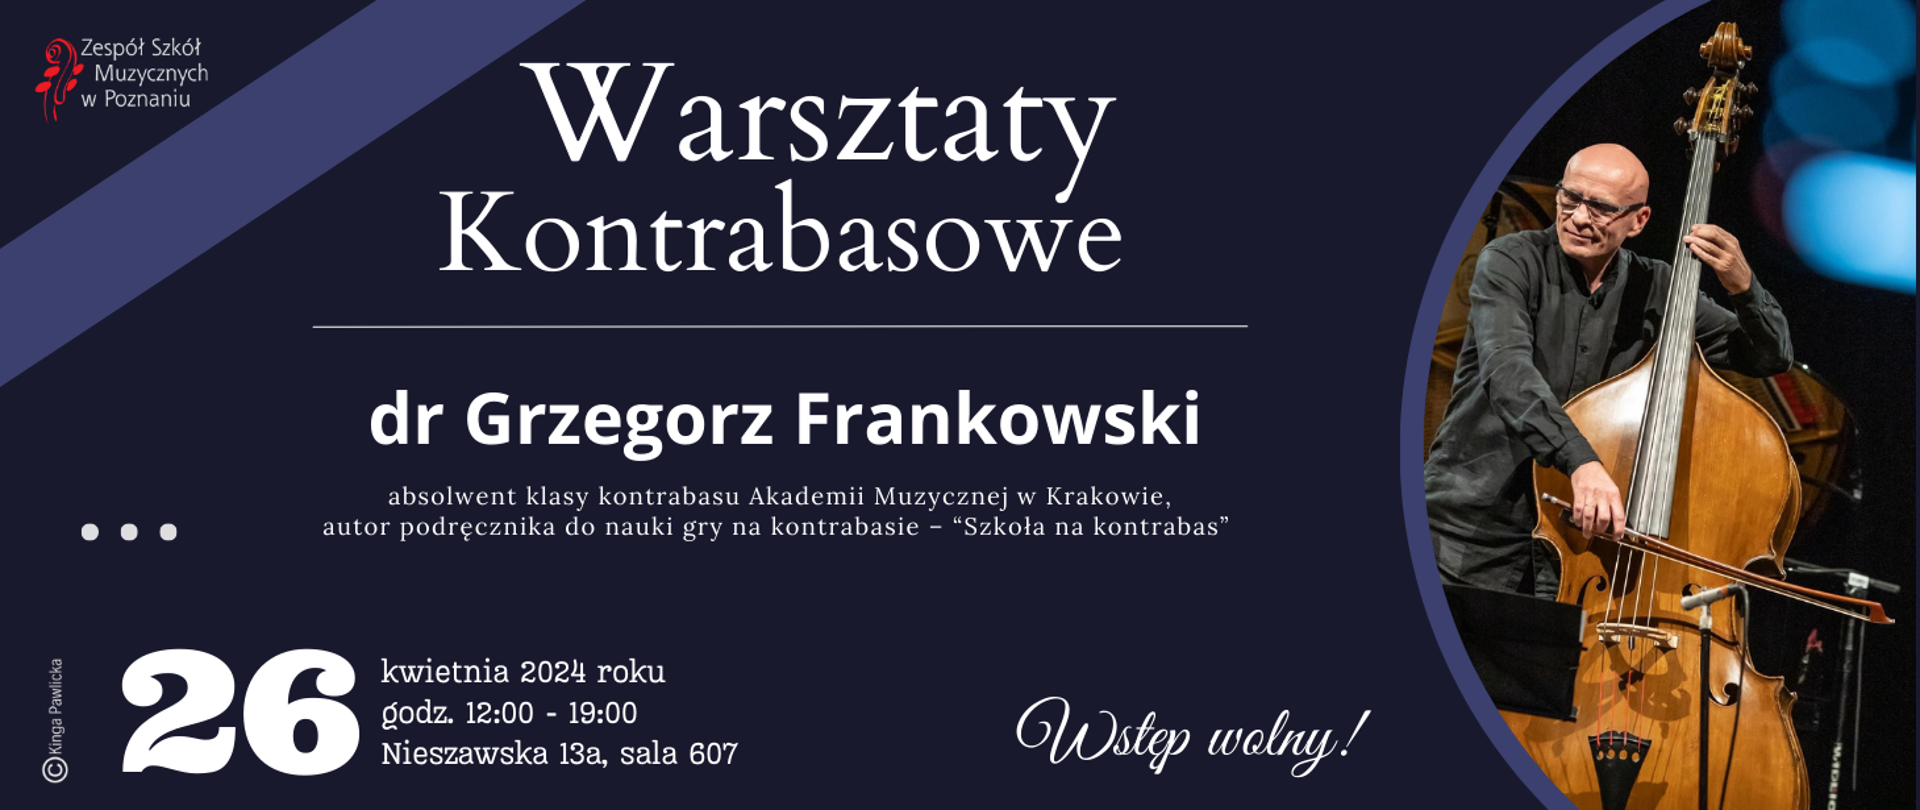 Plakat na granatowym tle ze zdjęciem dra. Grzegorza Frankowskiego, Warsztaty kontrabasowe, 26 kwietnia 2024 roku